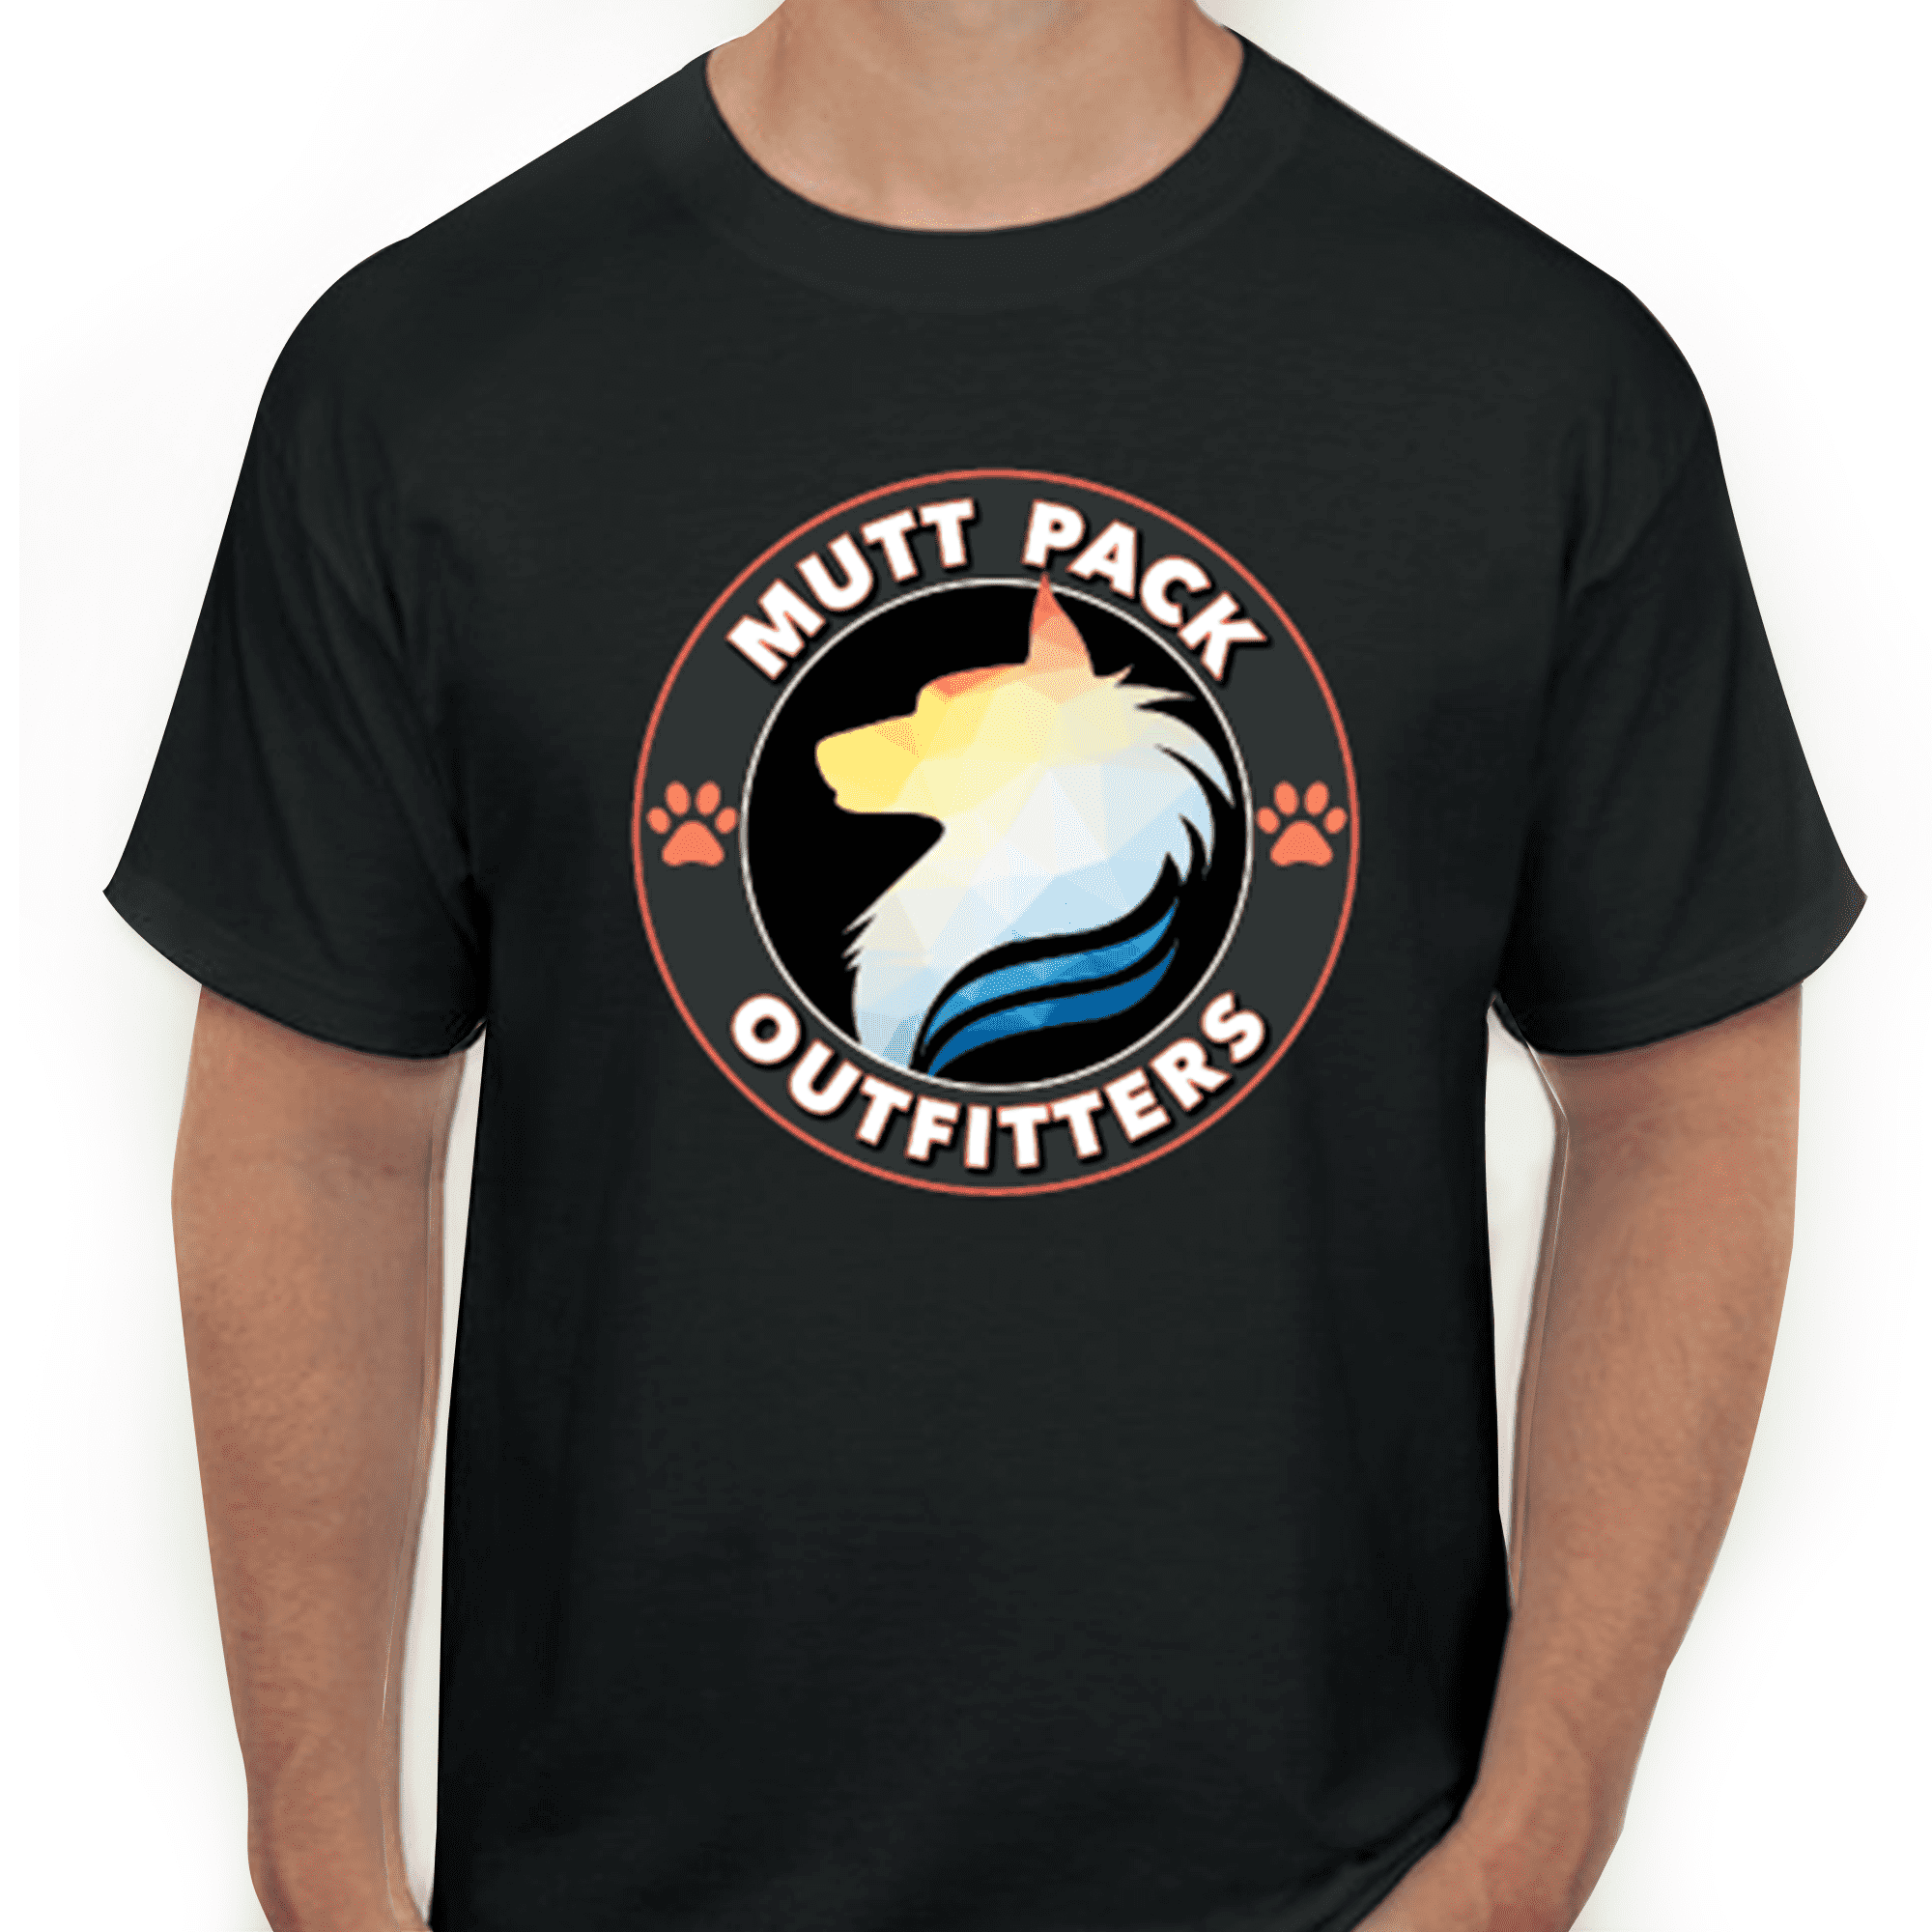 Mutt Pack T-Shirt (Black) Attire - Mutt Pack Outfitters 